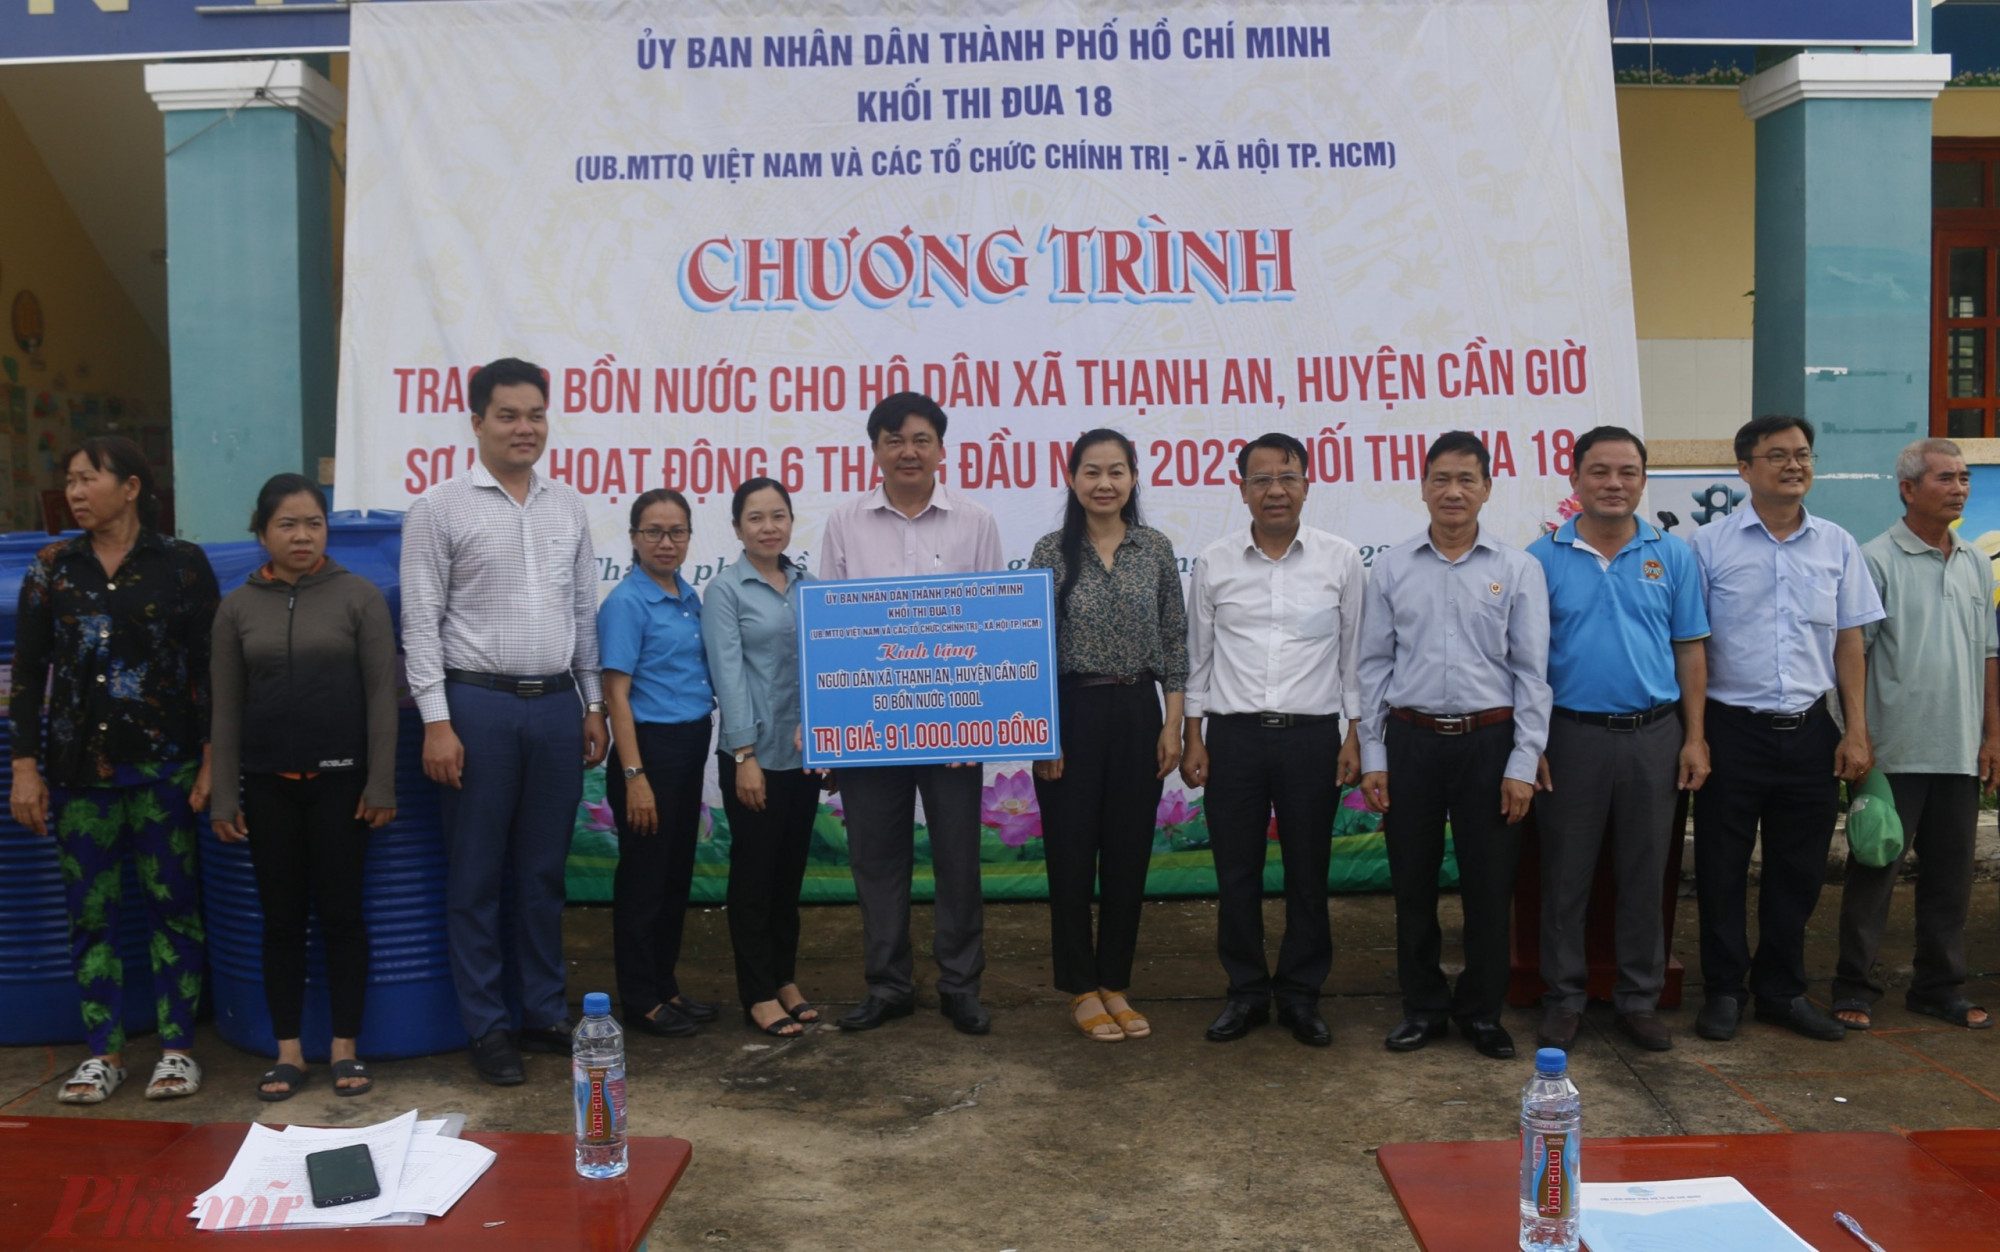 Lãnh đạo Khối thi đua 18 trao tặng bảng tượng trưng 50 bồn chứa nước cho lãnh đạo xã Thạnh An, huyện Cần Giờ.